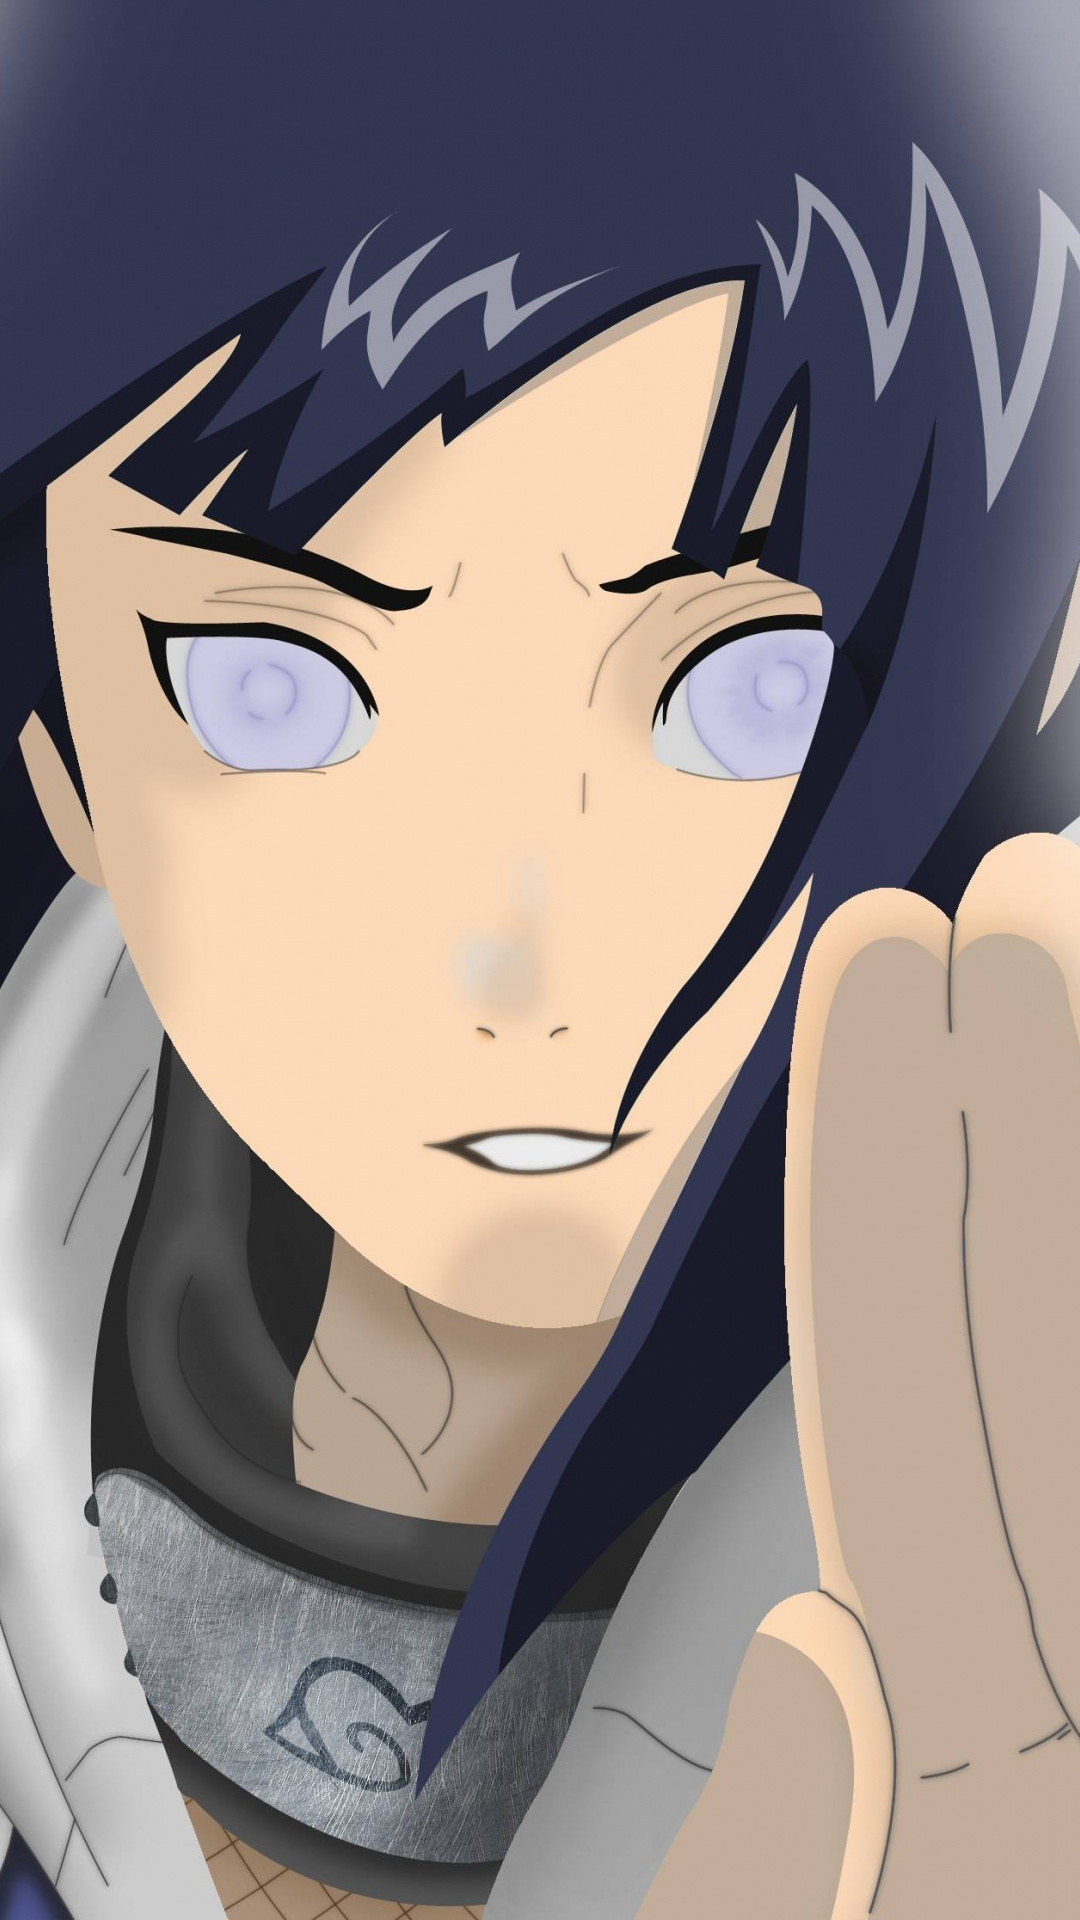 Hinata Hyuga, Naruto character, Mobile wallpaper, Artistic illustration, 1080x1920 Full HD Phone